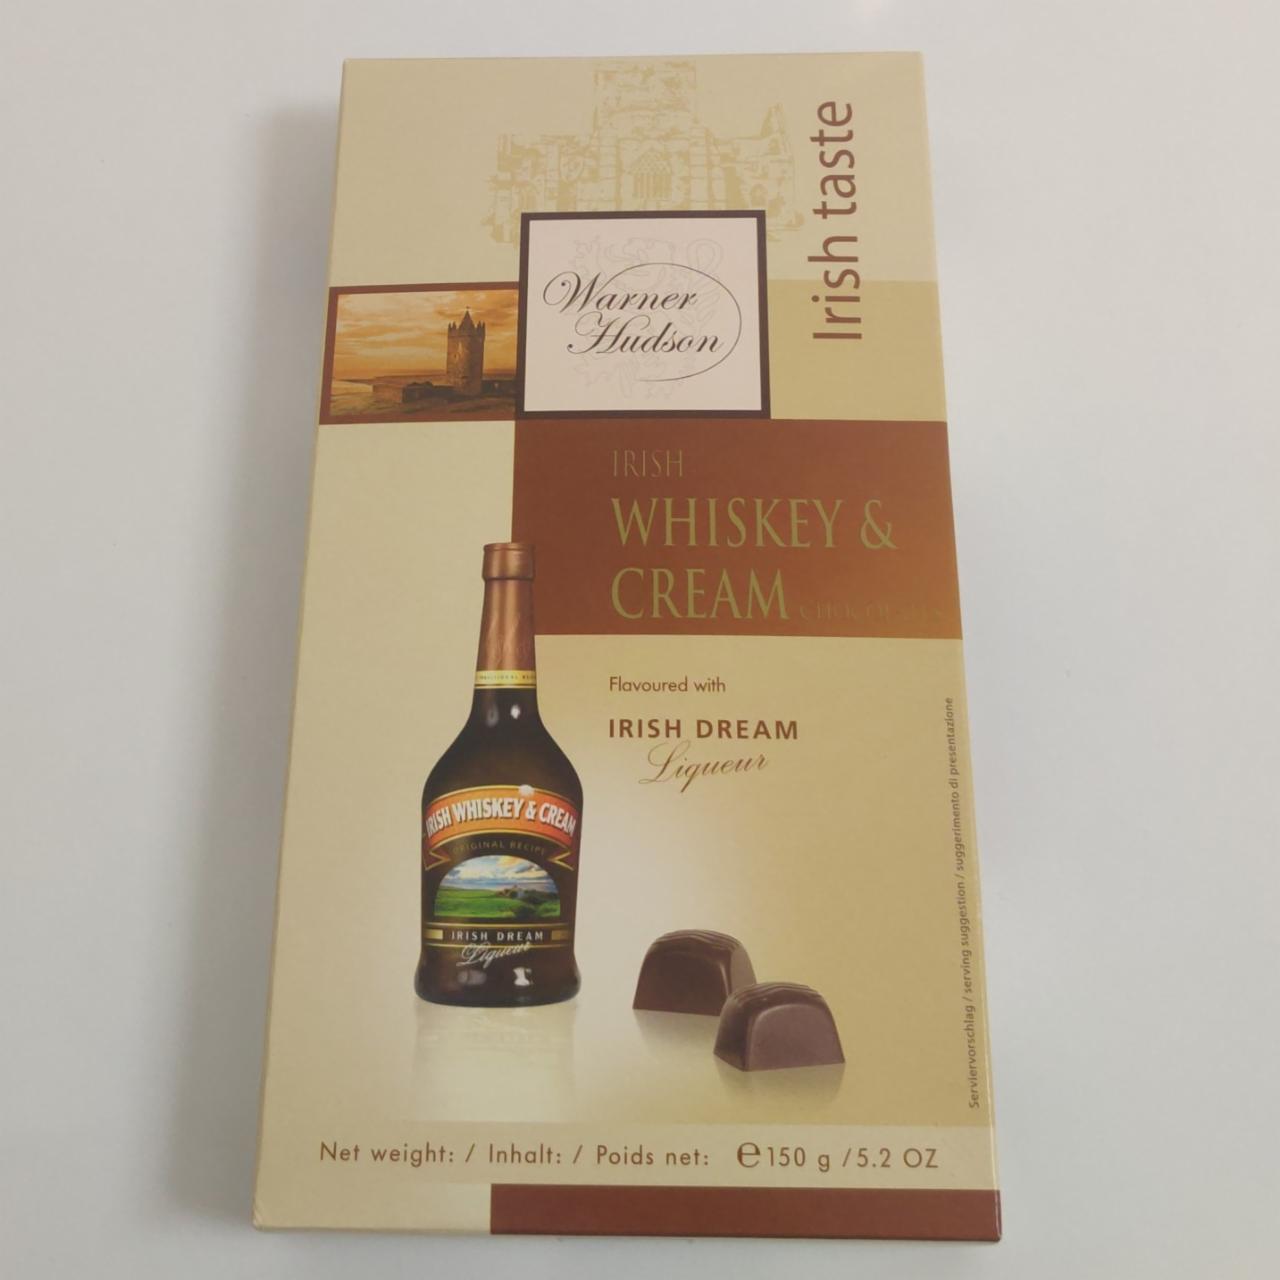 Фото - конфеты ирландский виски и сливки Irish Whiskey & Cream Warner Hudson